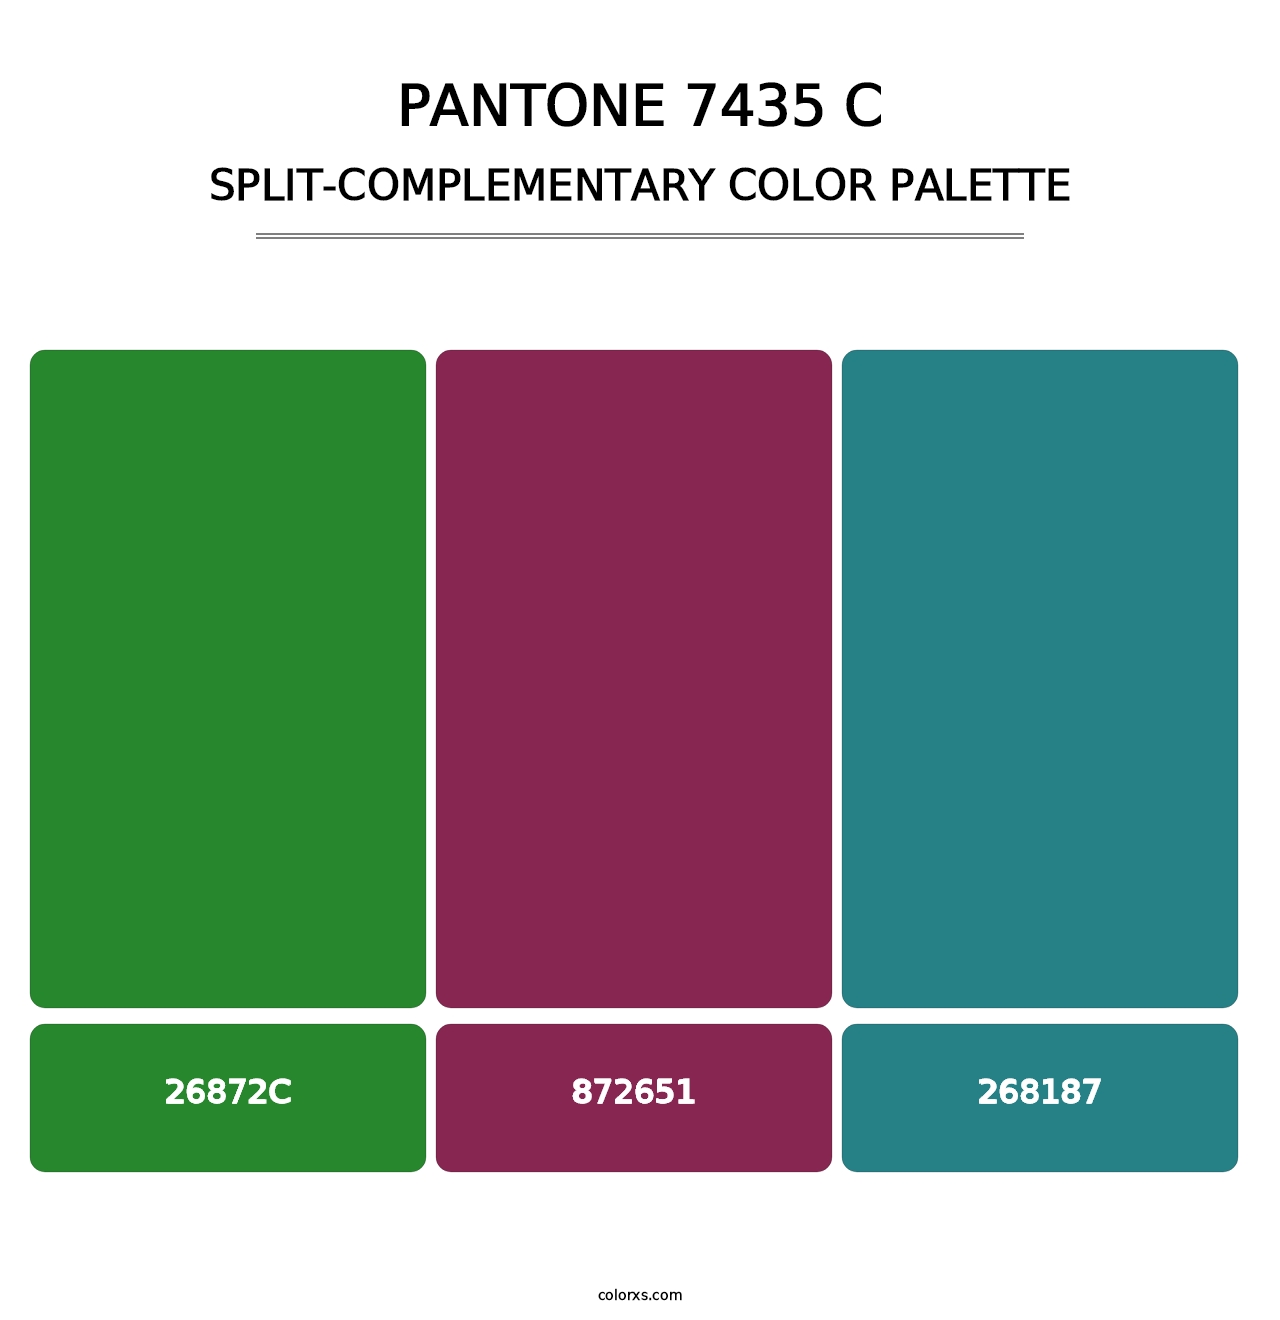 PANTONE 7435 C - Split-Complementary Color Palette